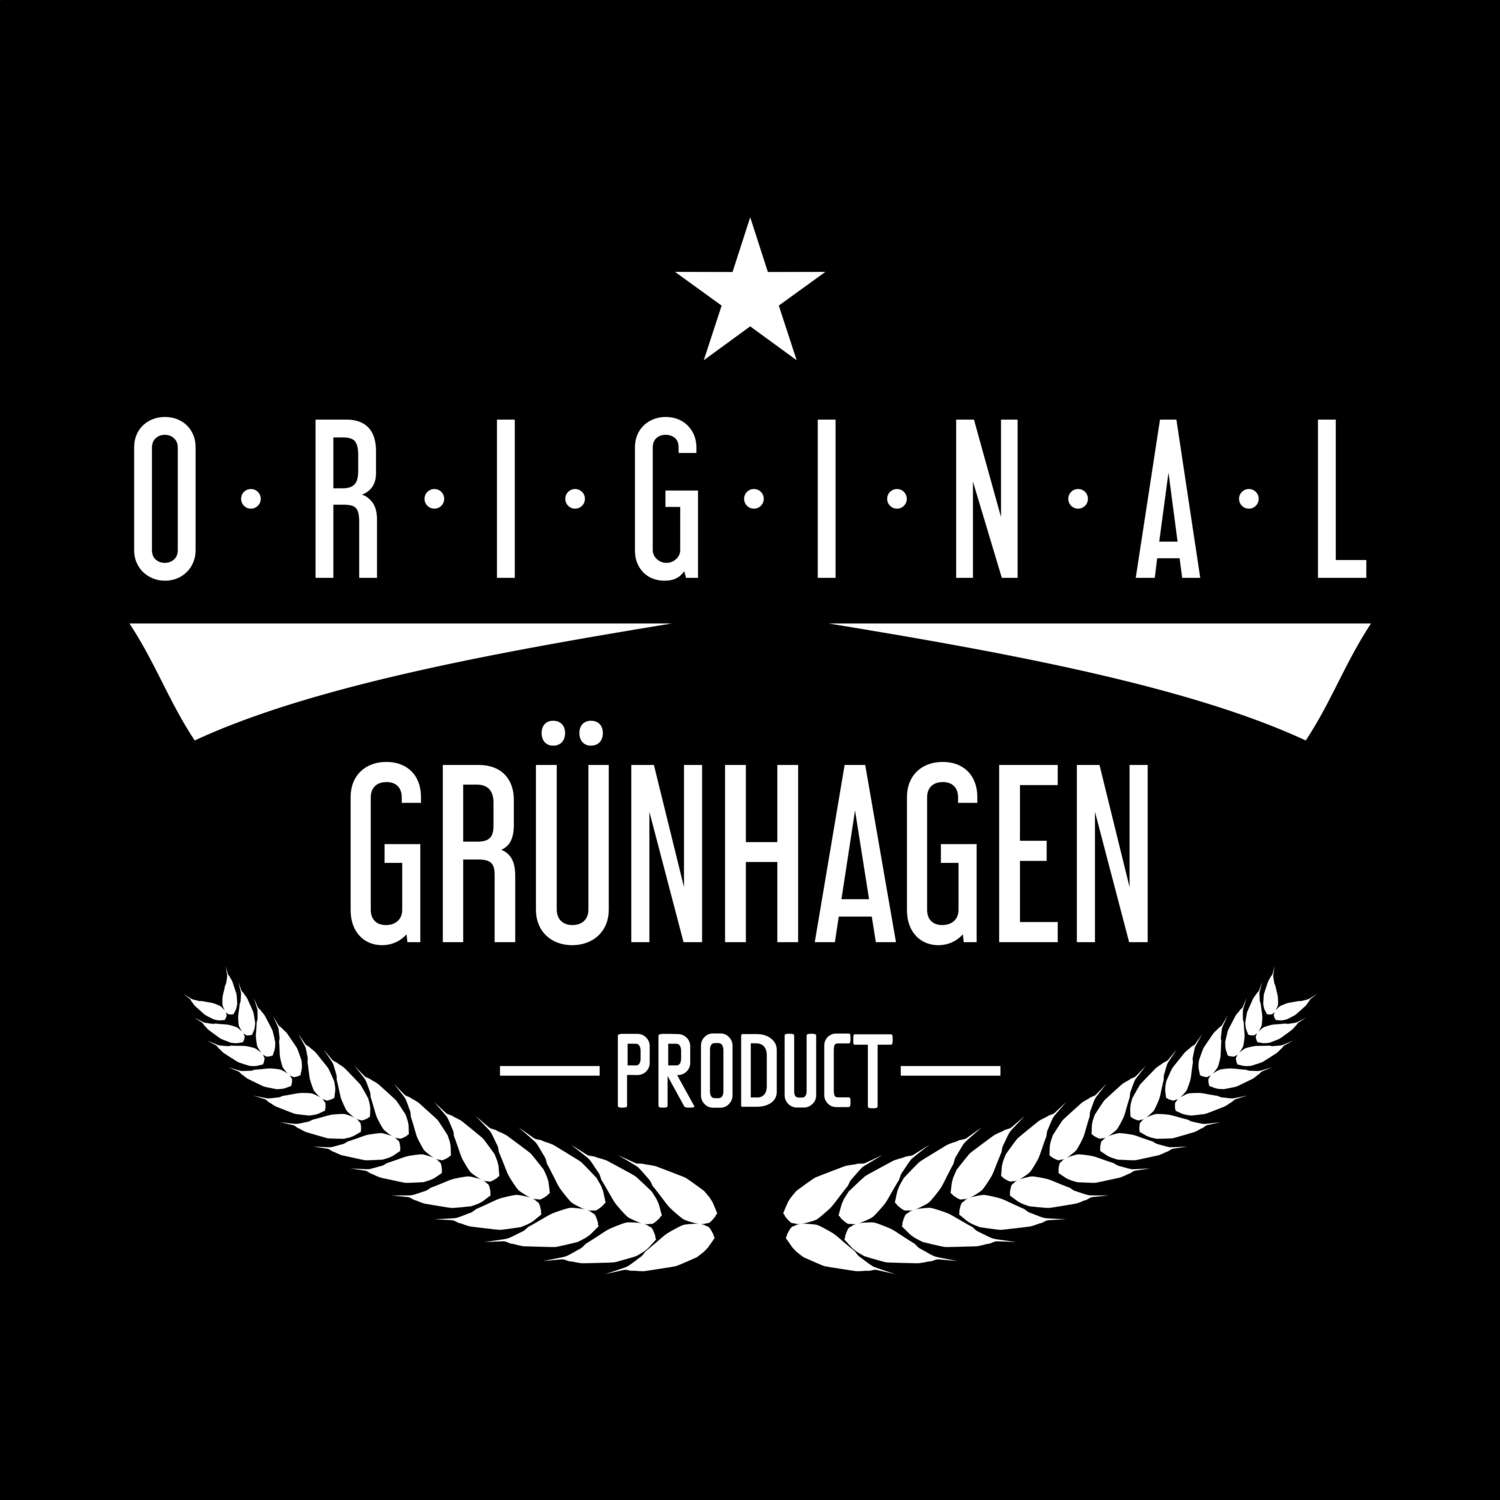 Grünhagen T-Shirt »Original Product«